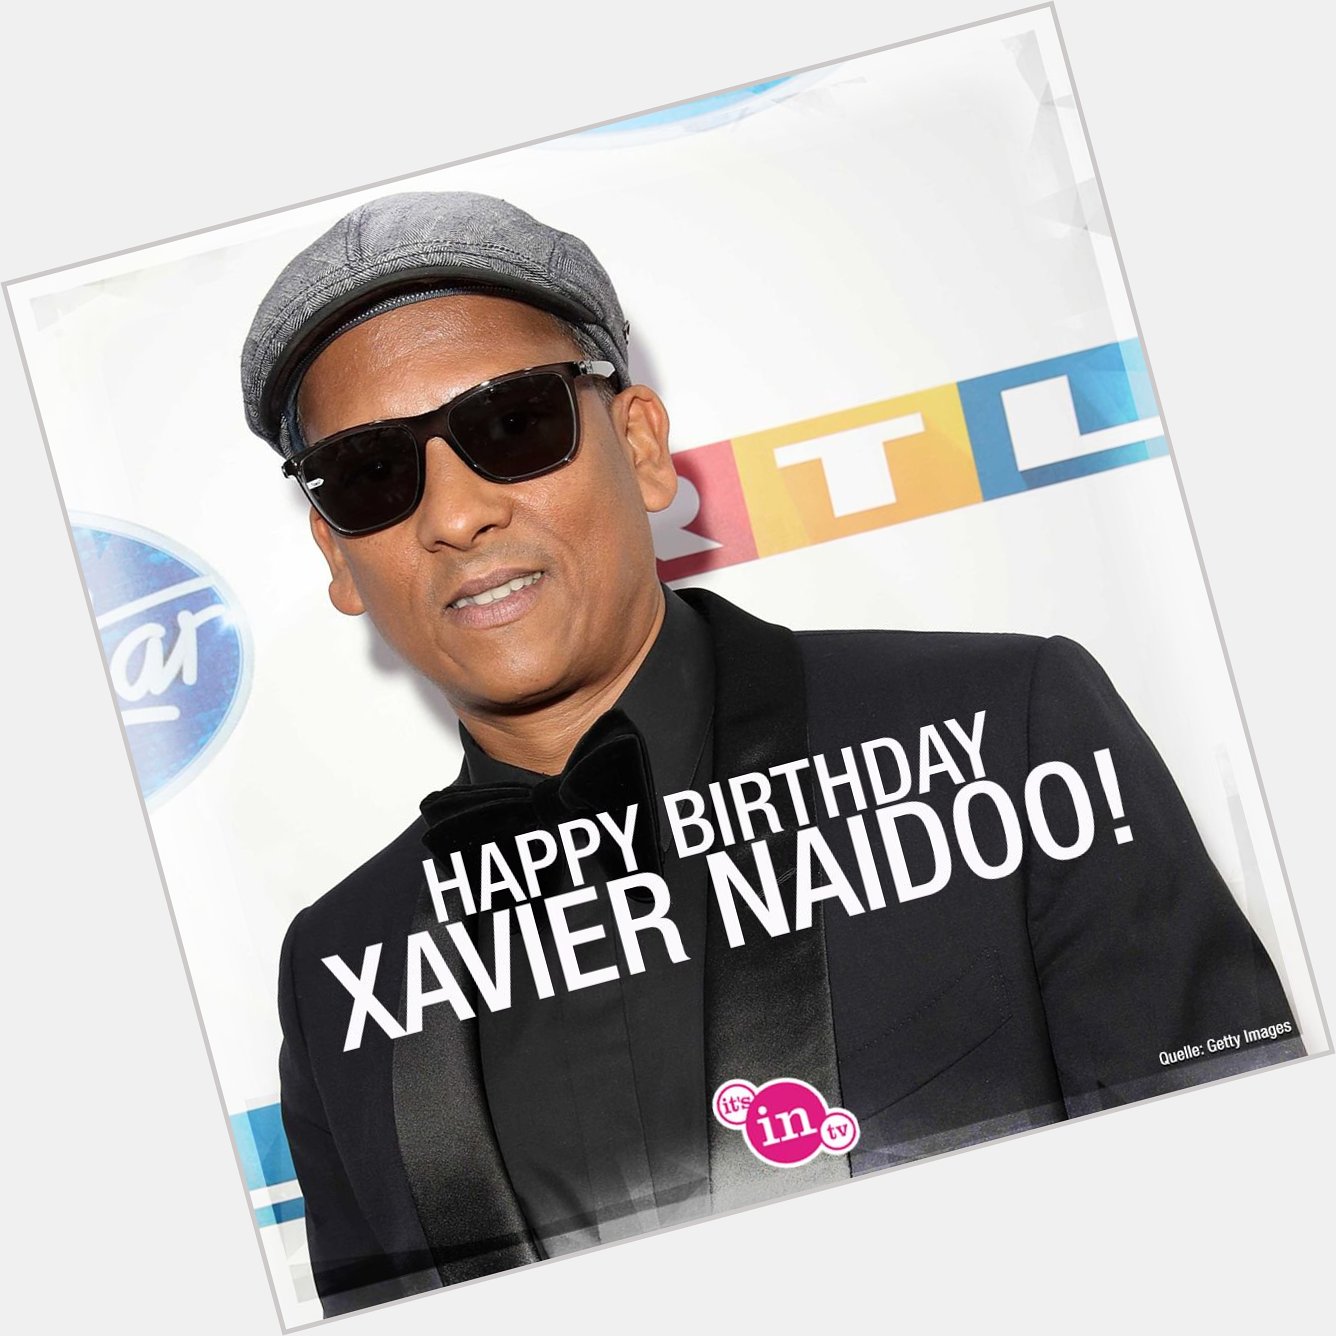 Unser heutiges Geburtstagskind ist Xavier Naidoo! Happy Birthday! Hoch soll er leben!  